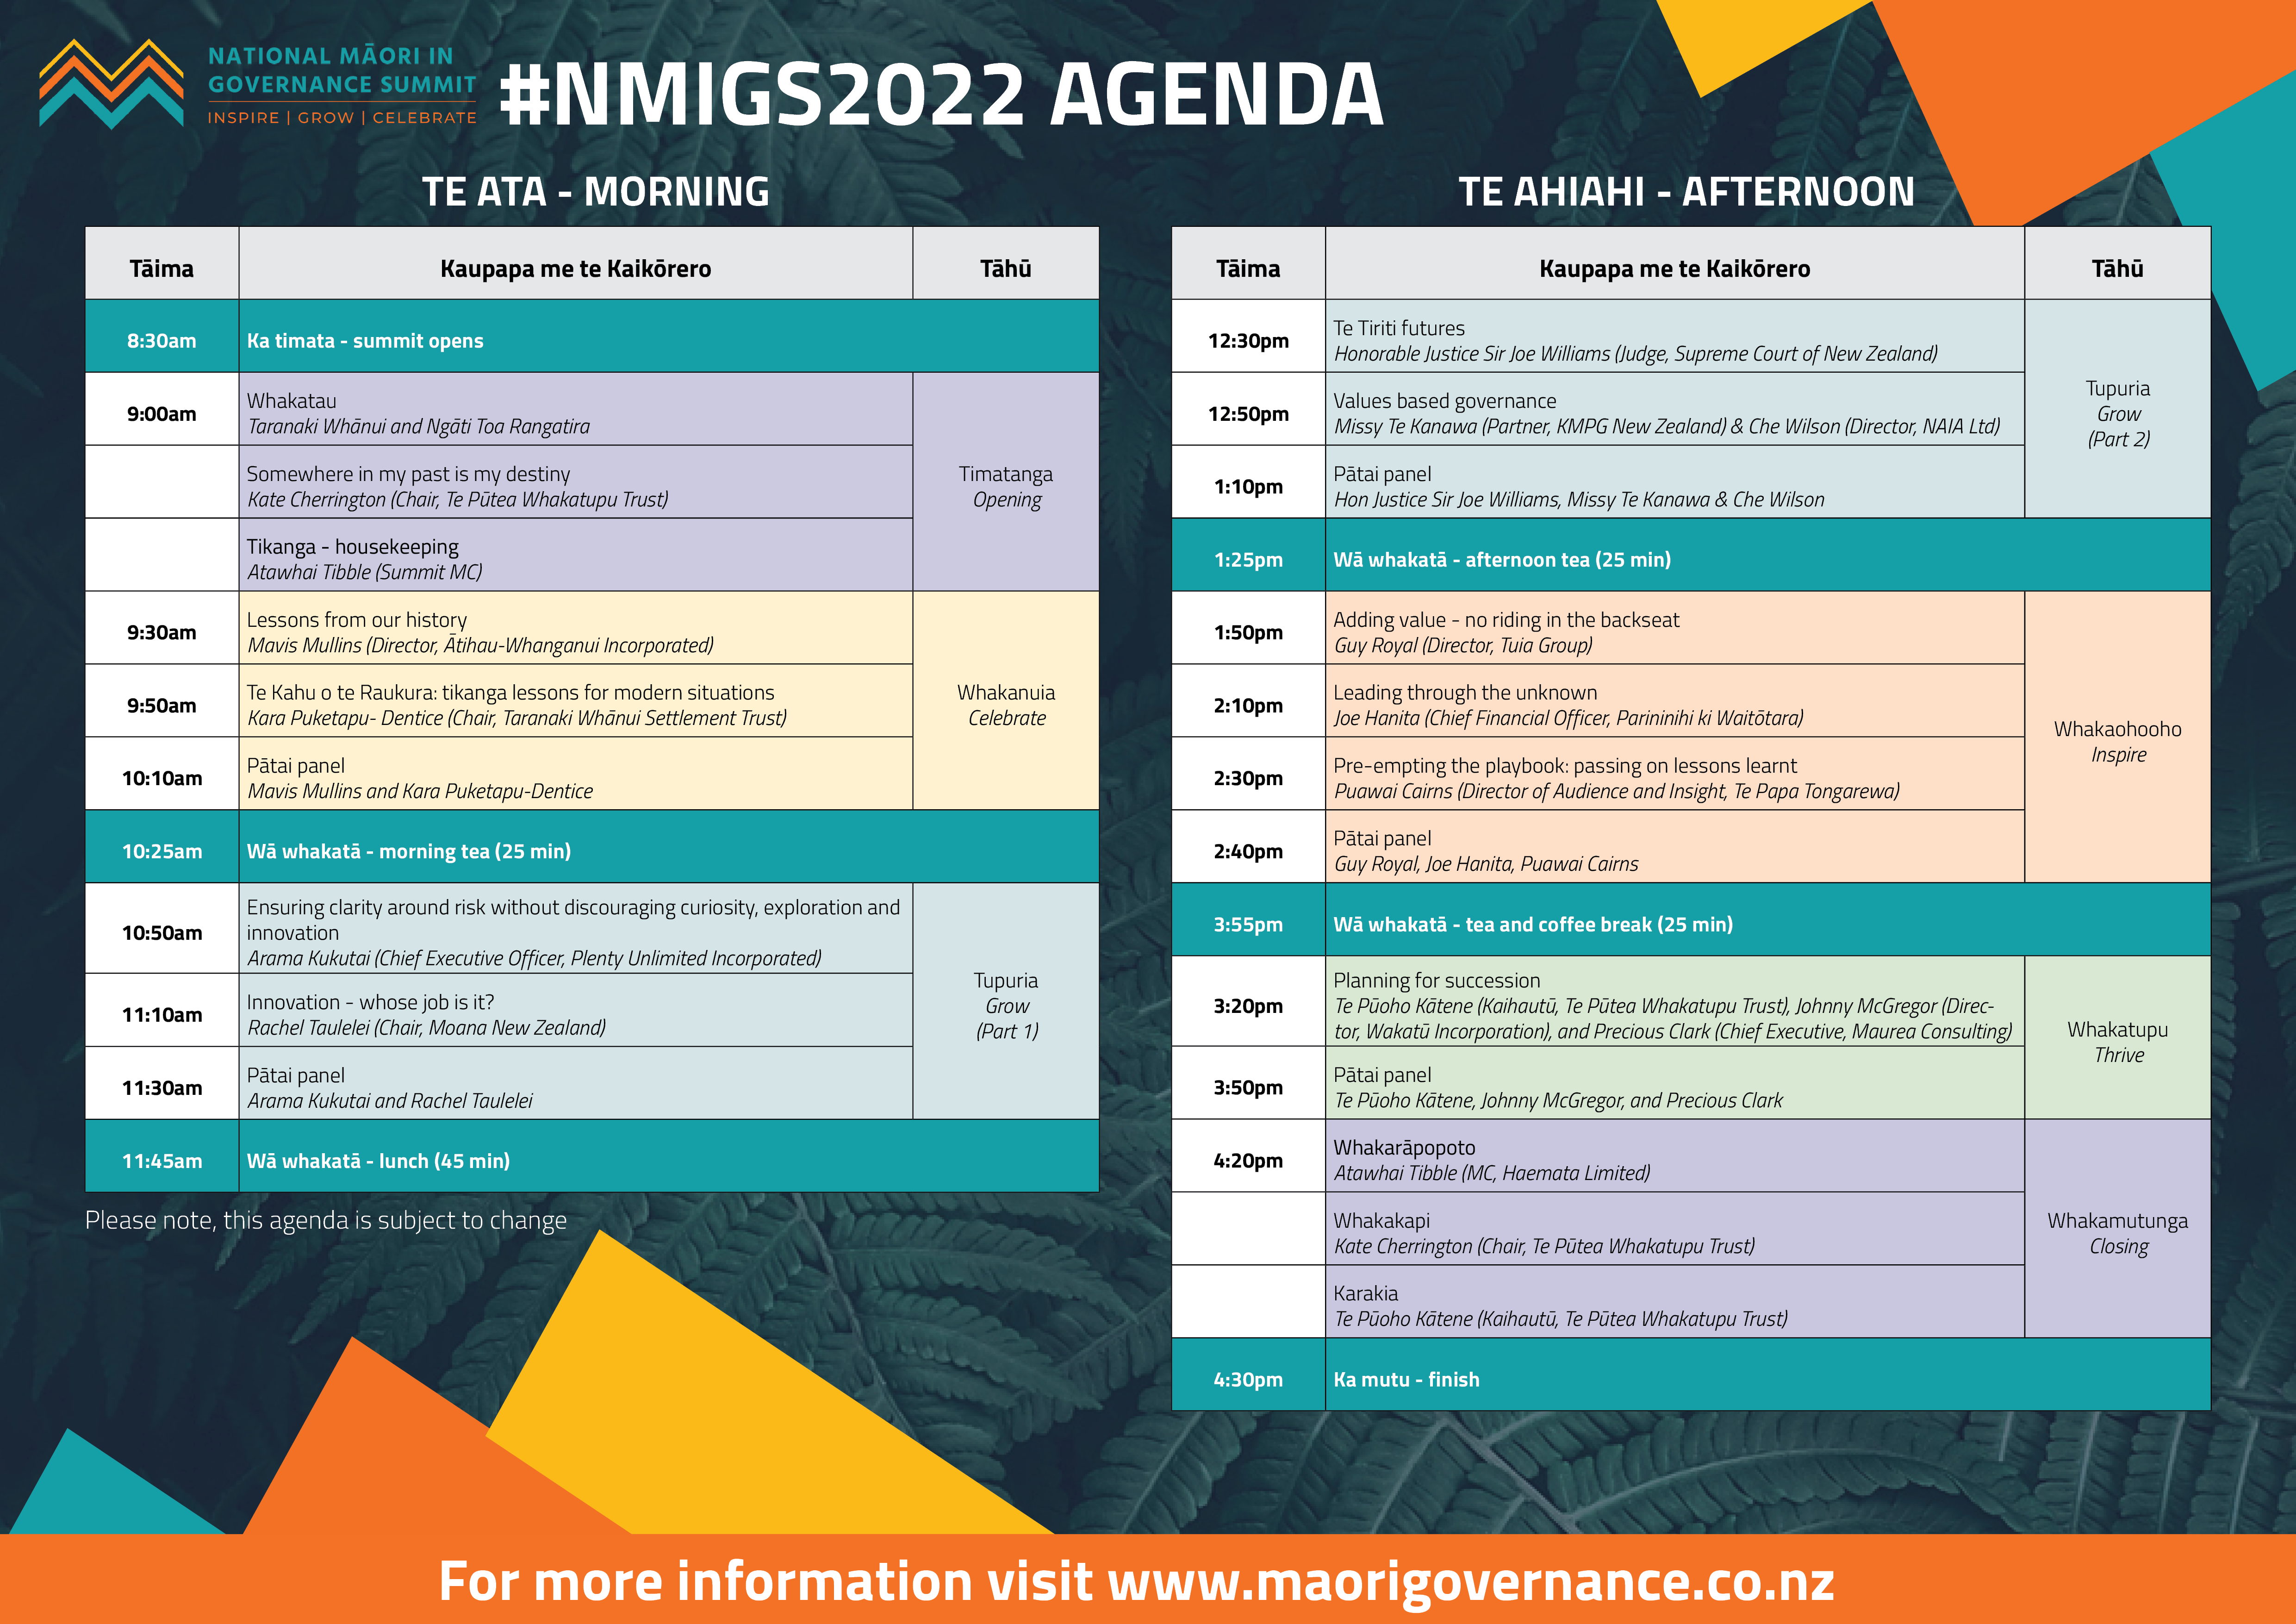 NMIGS2022 agenda